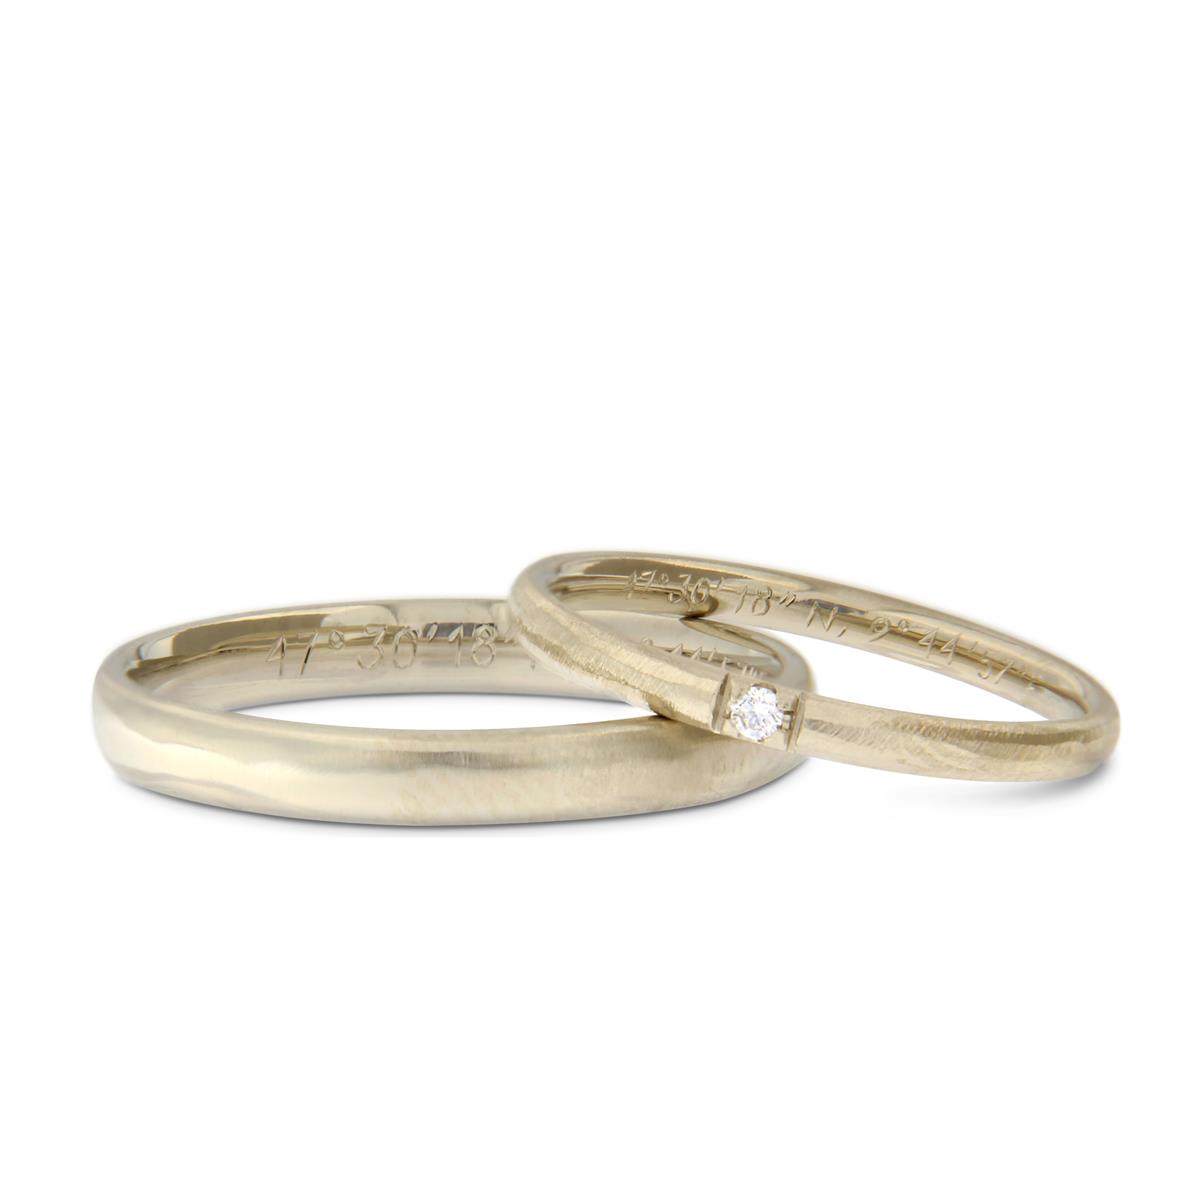 Katie g. Jewellery_Wedding Collection 2019_Eheringe - Ovalprofil in 14. und 18kt. natürlichem Weißgold mit Brillant